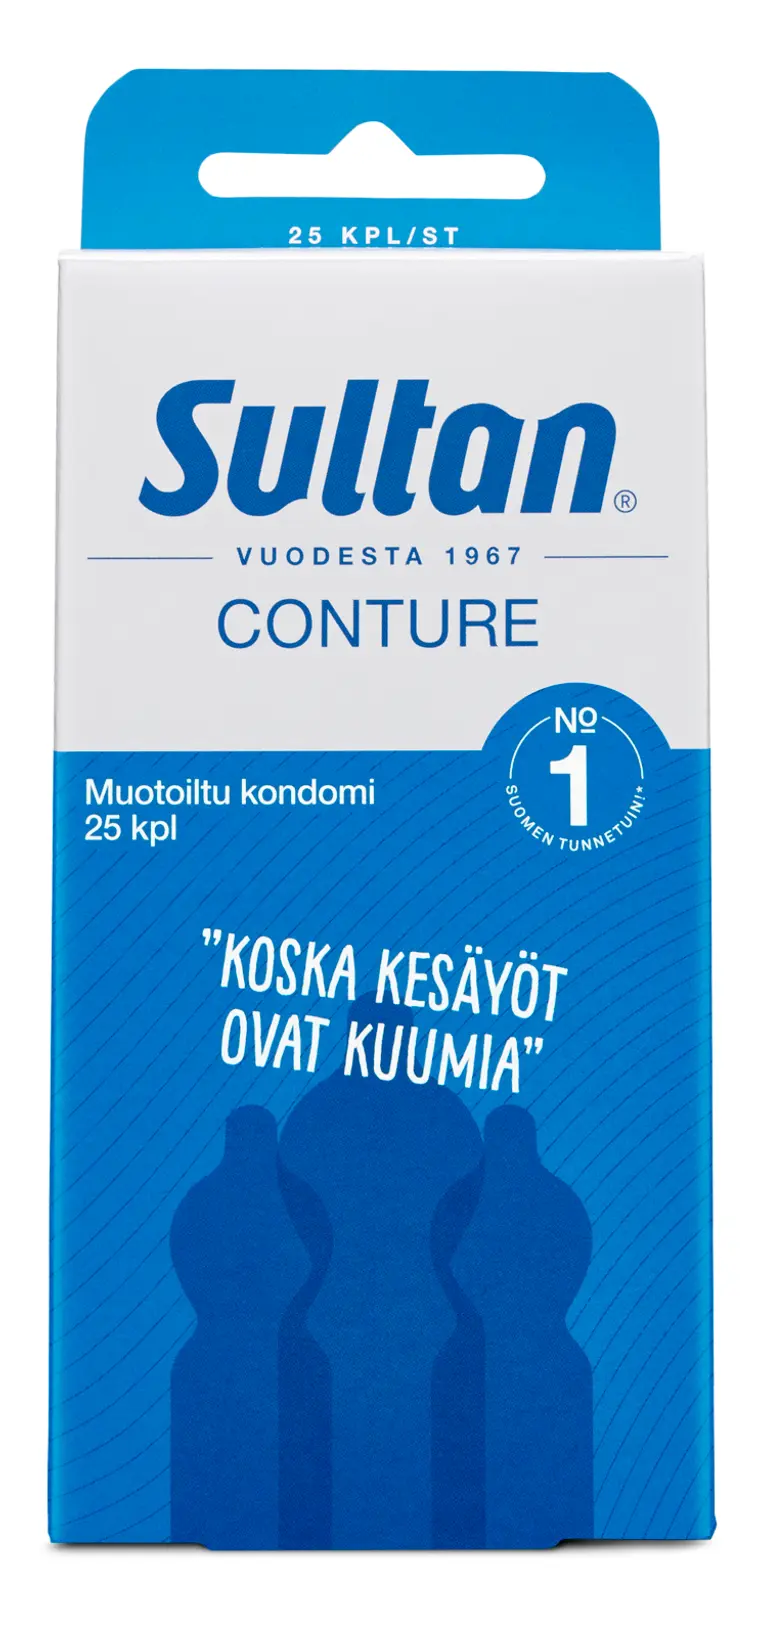 Sultan Conture muotoiltu kondomi 25kpl | Prisma verkkokauppa